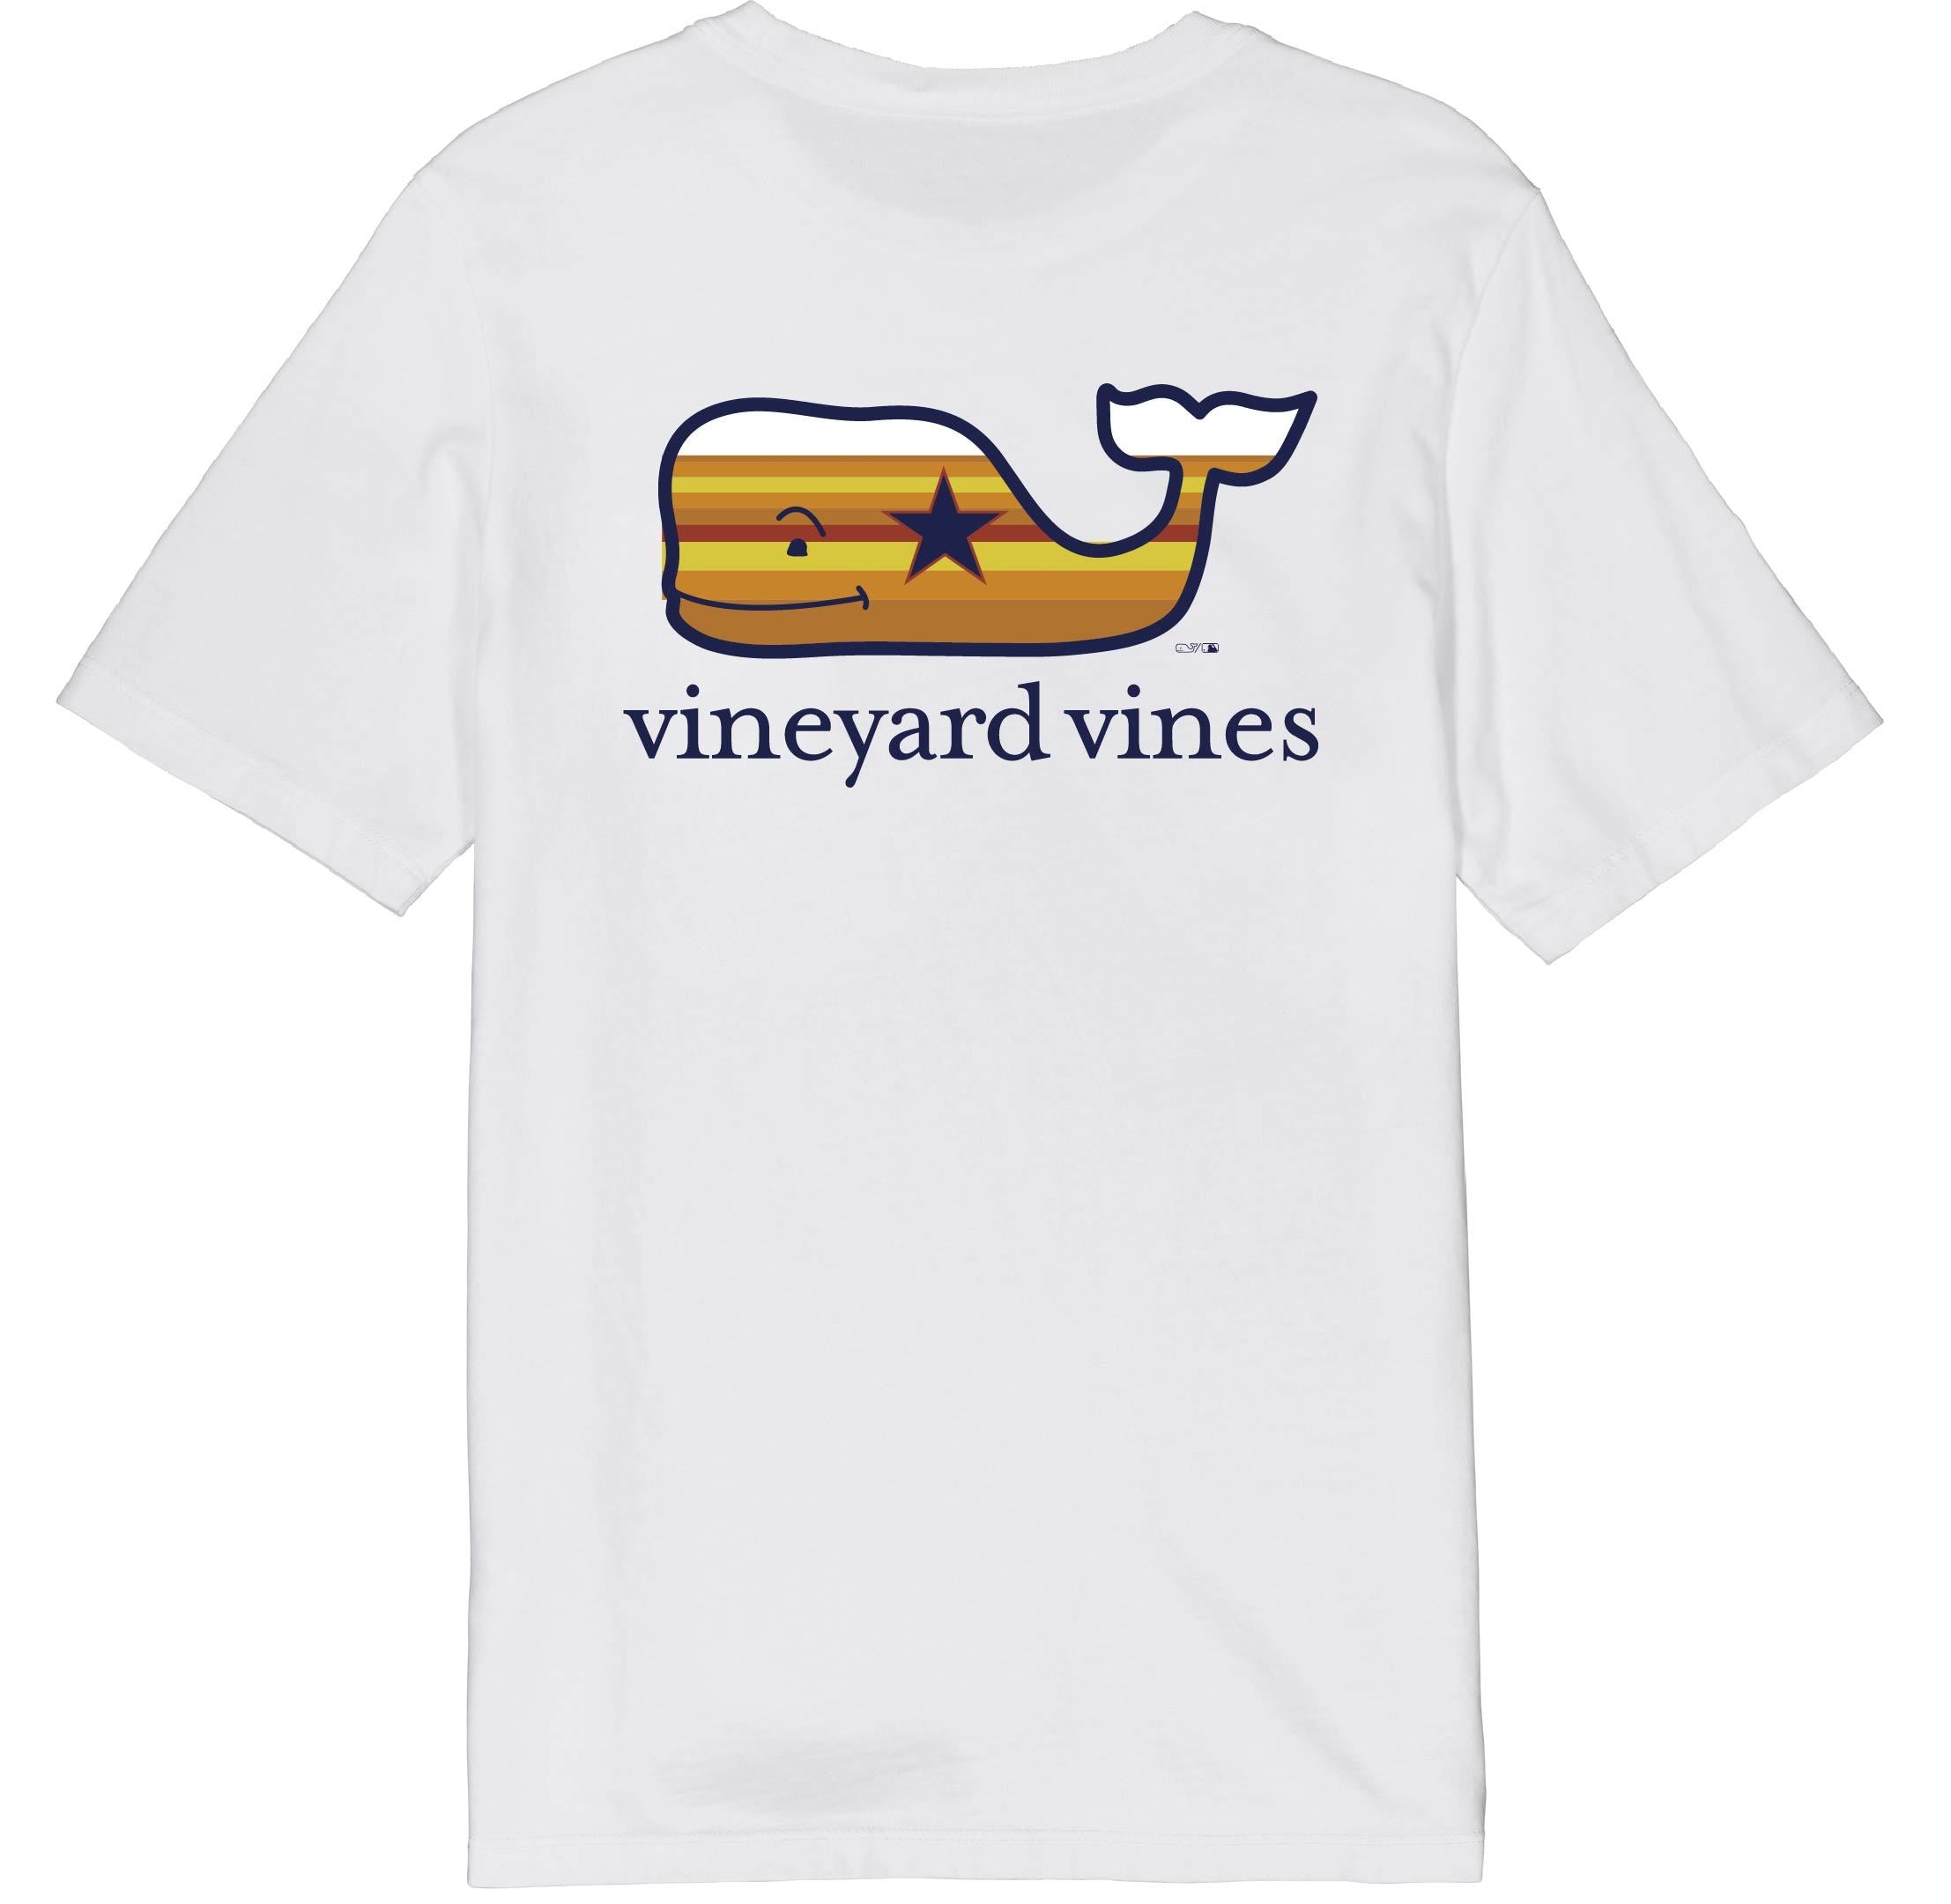 vineyard vines astros